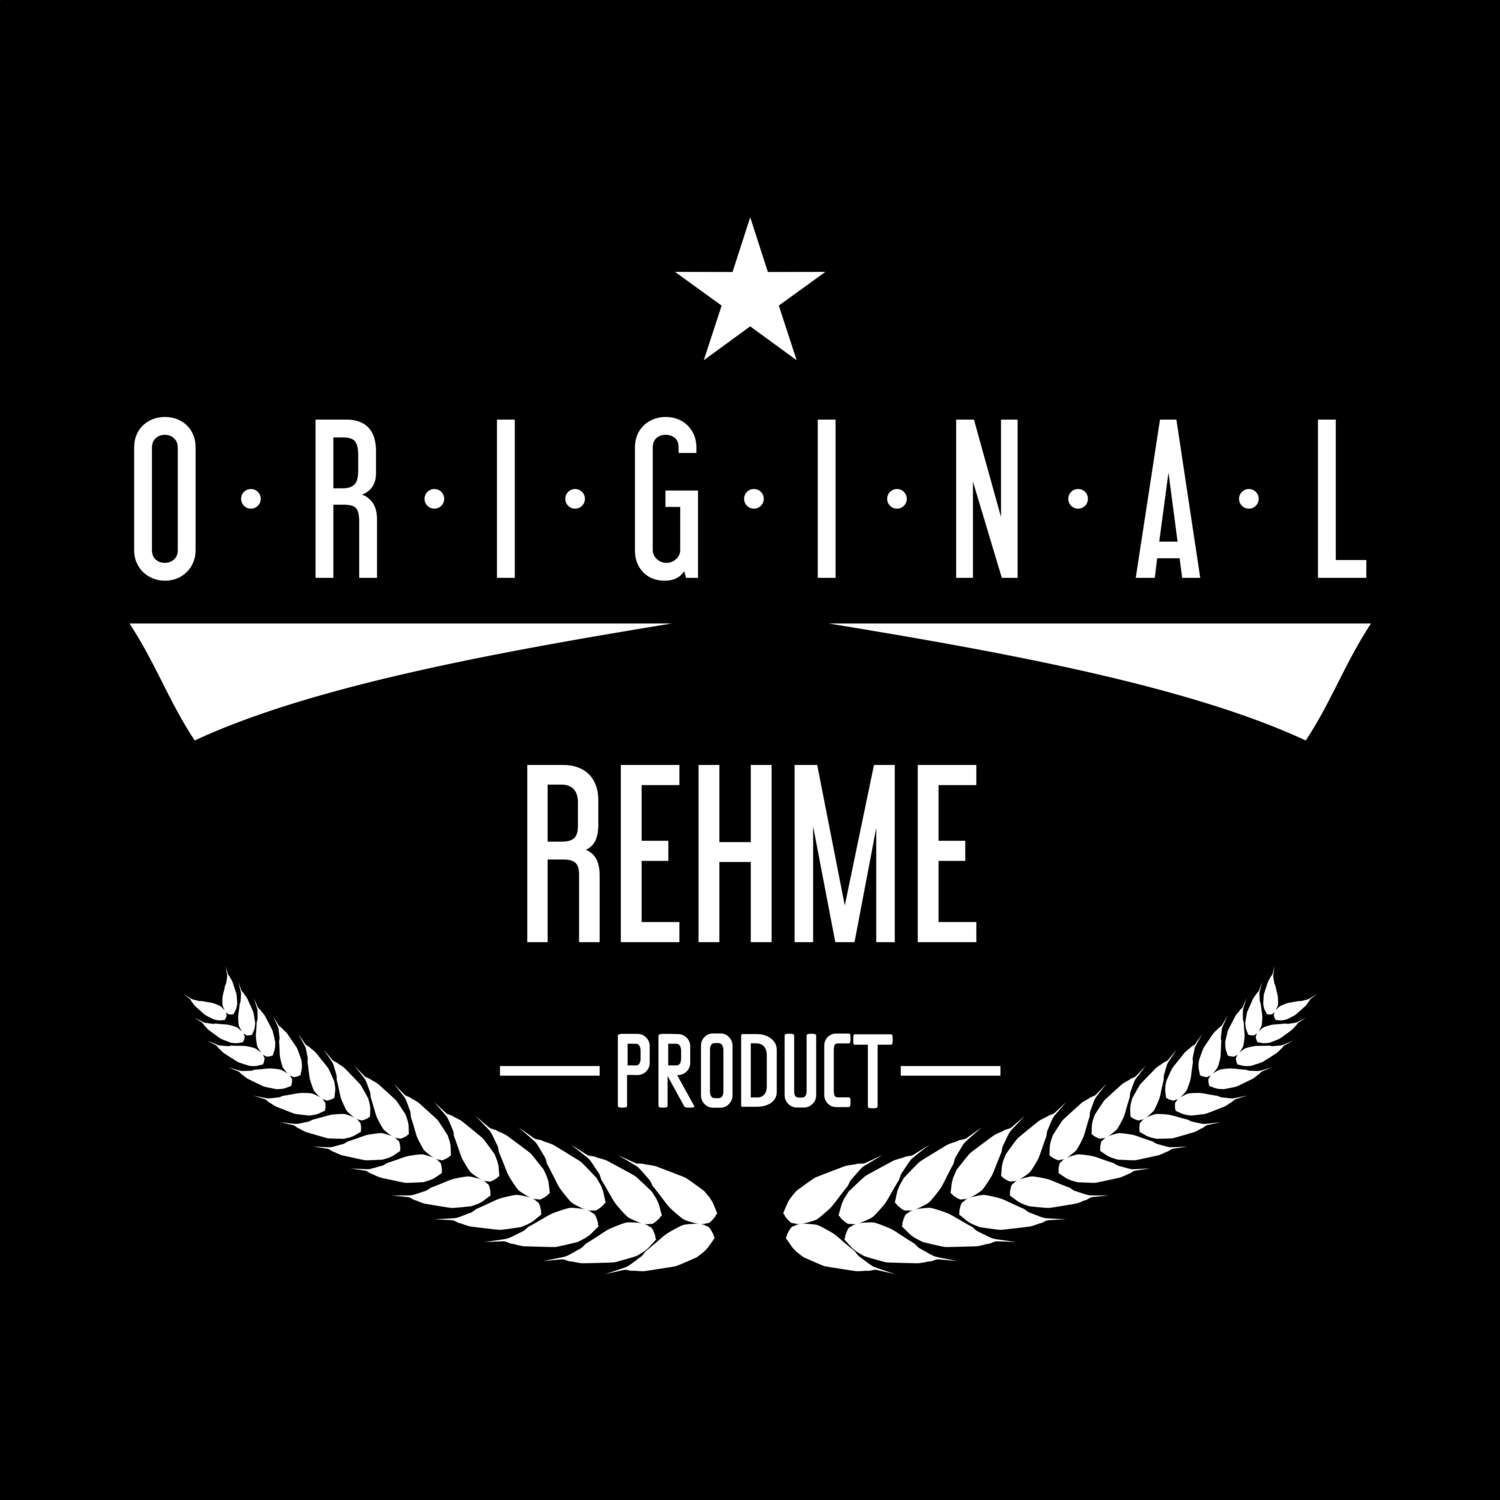 Rehme T-Shirt »Original Product«